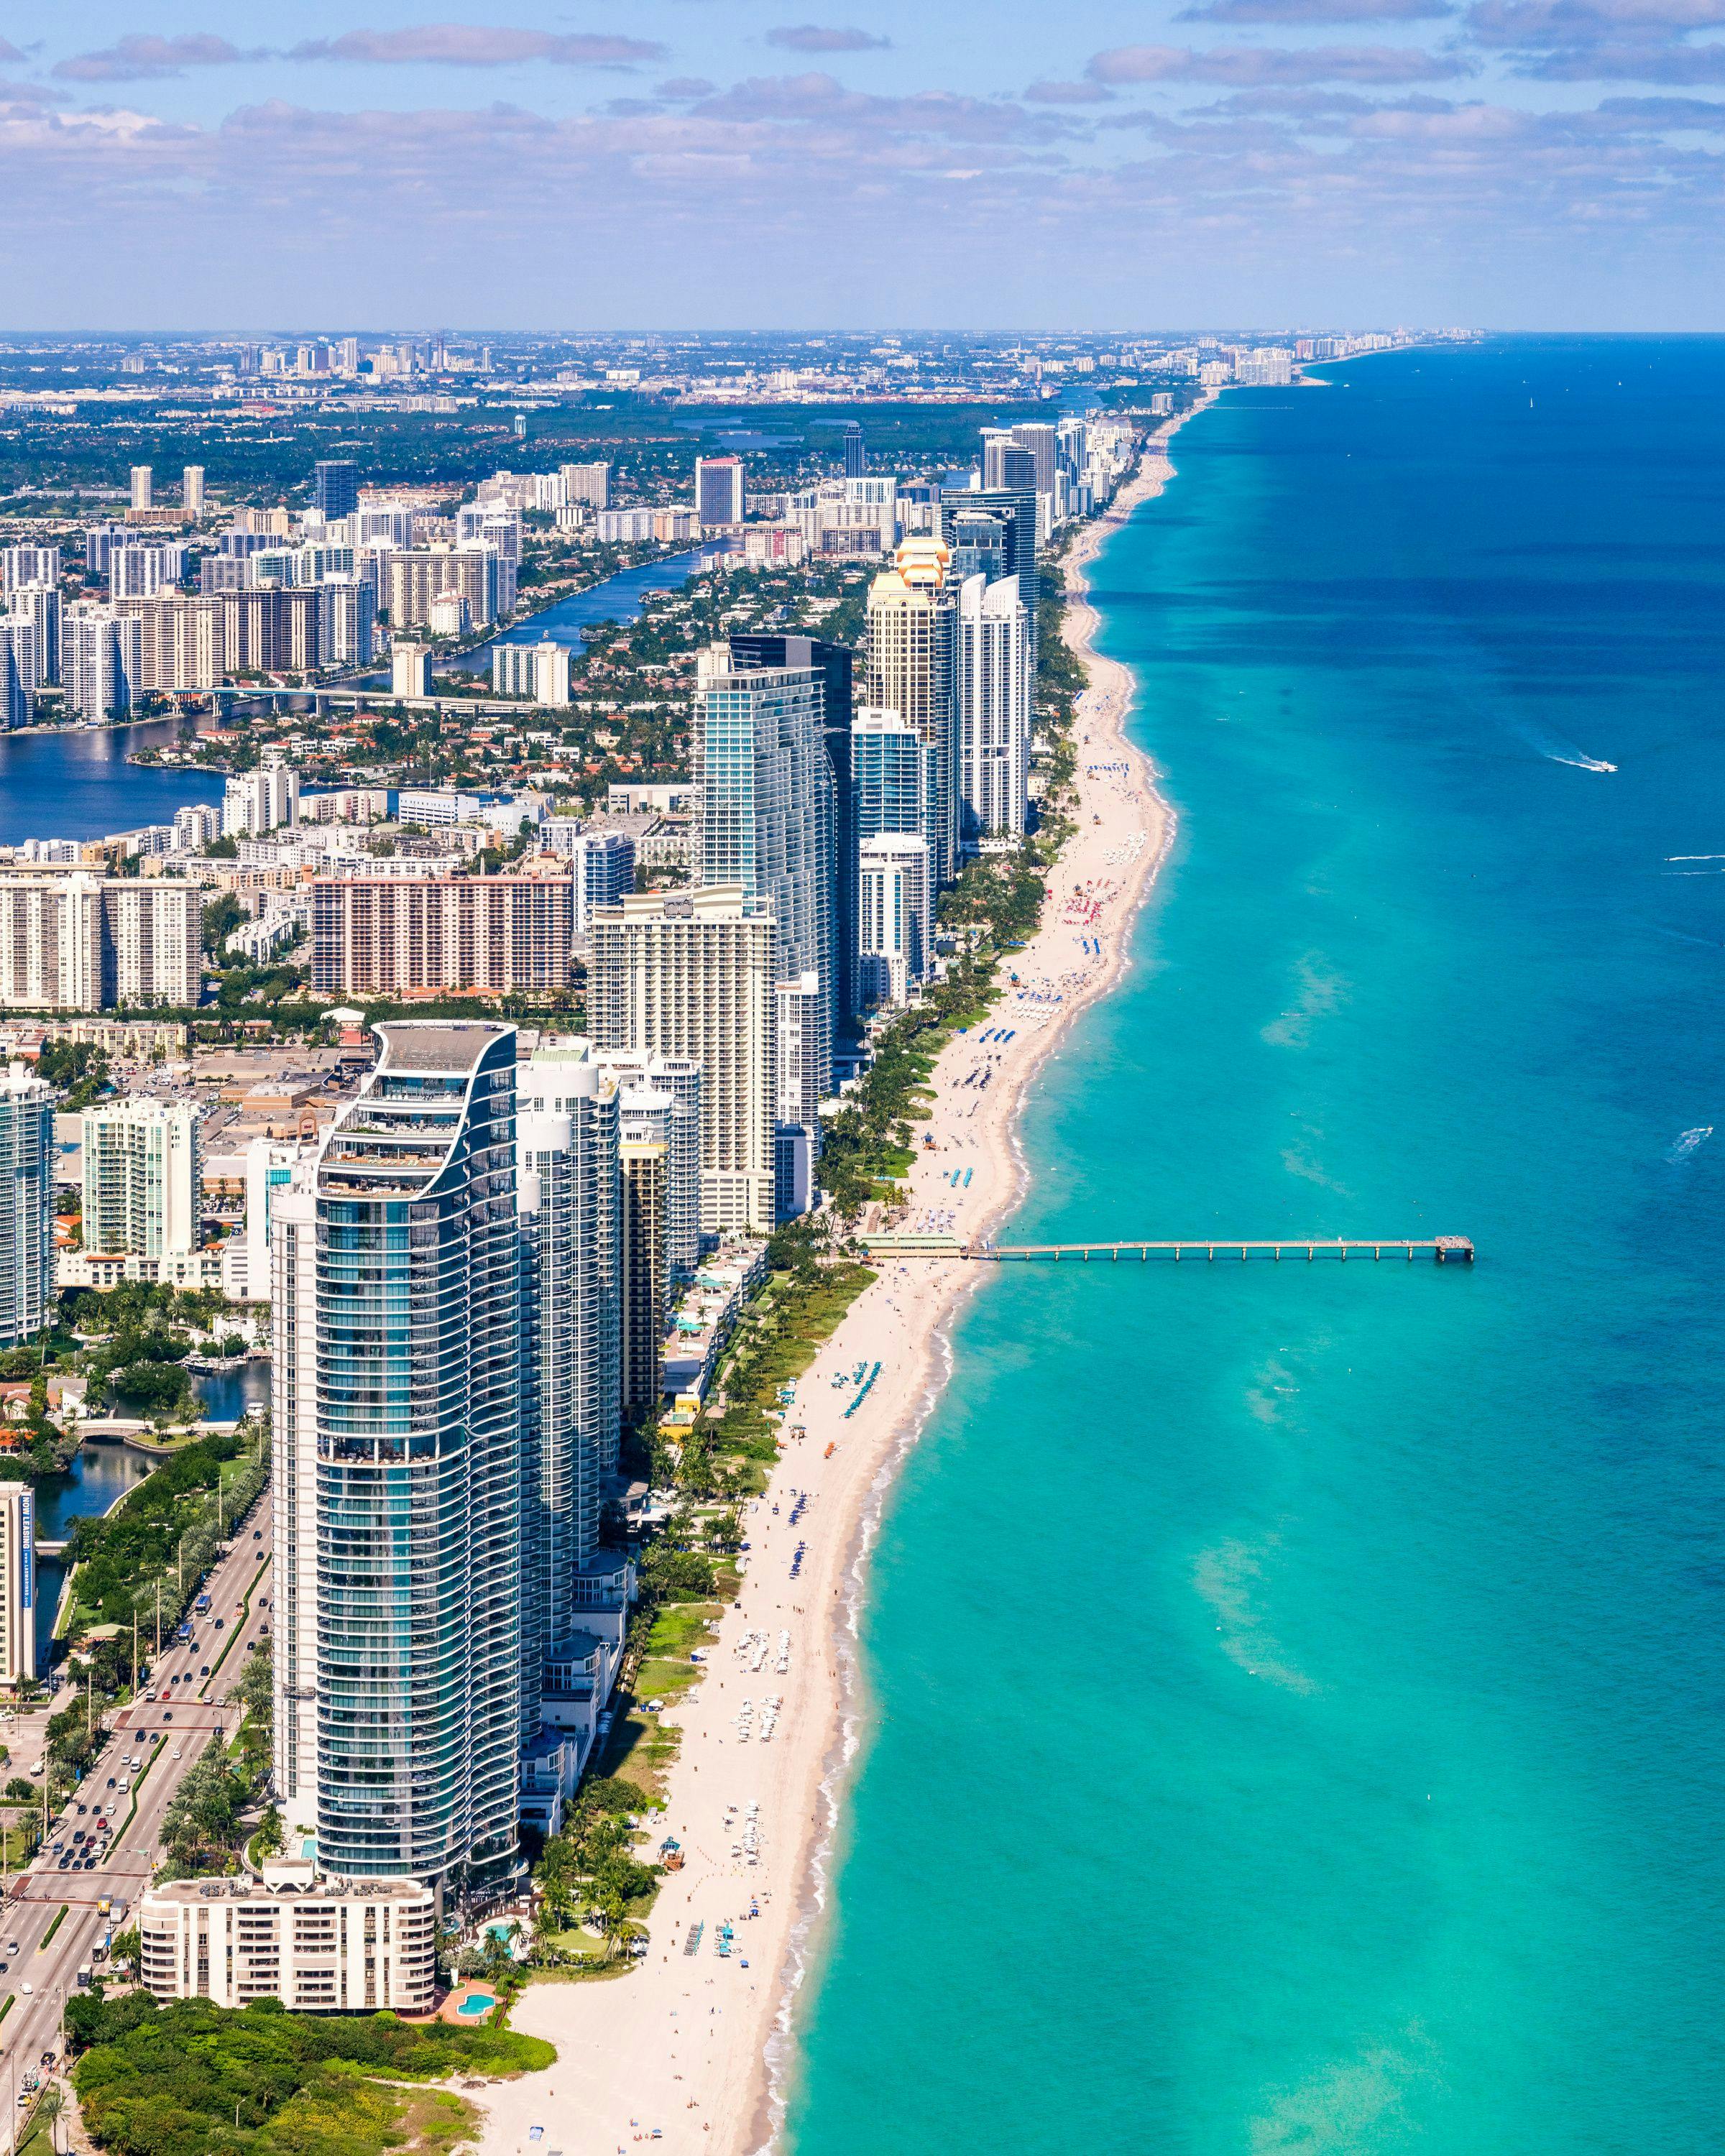 Miami, where luxury meets fun